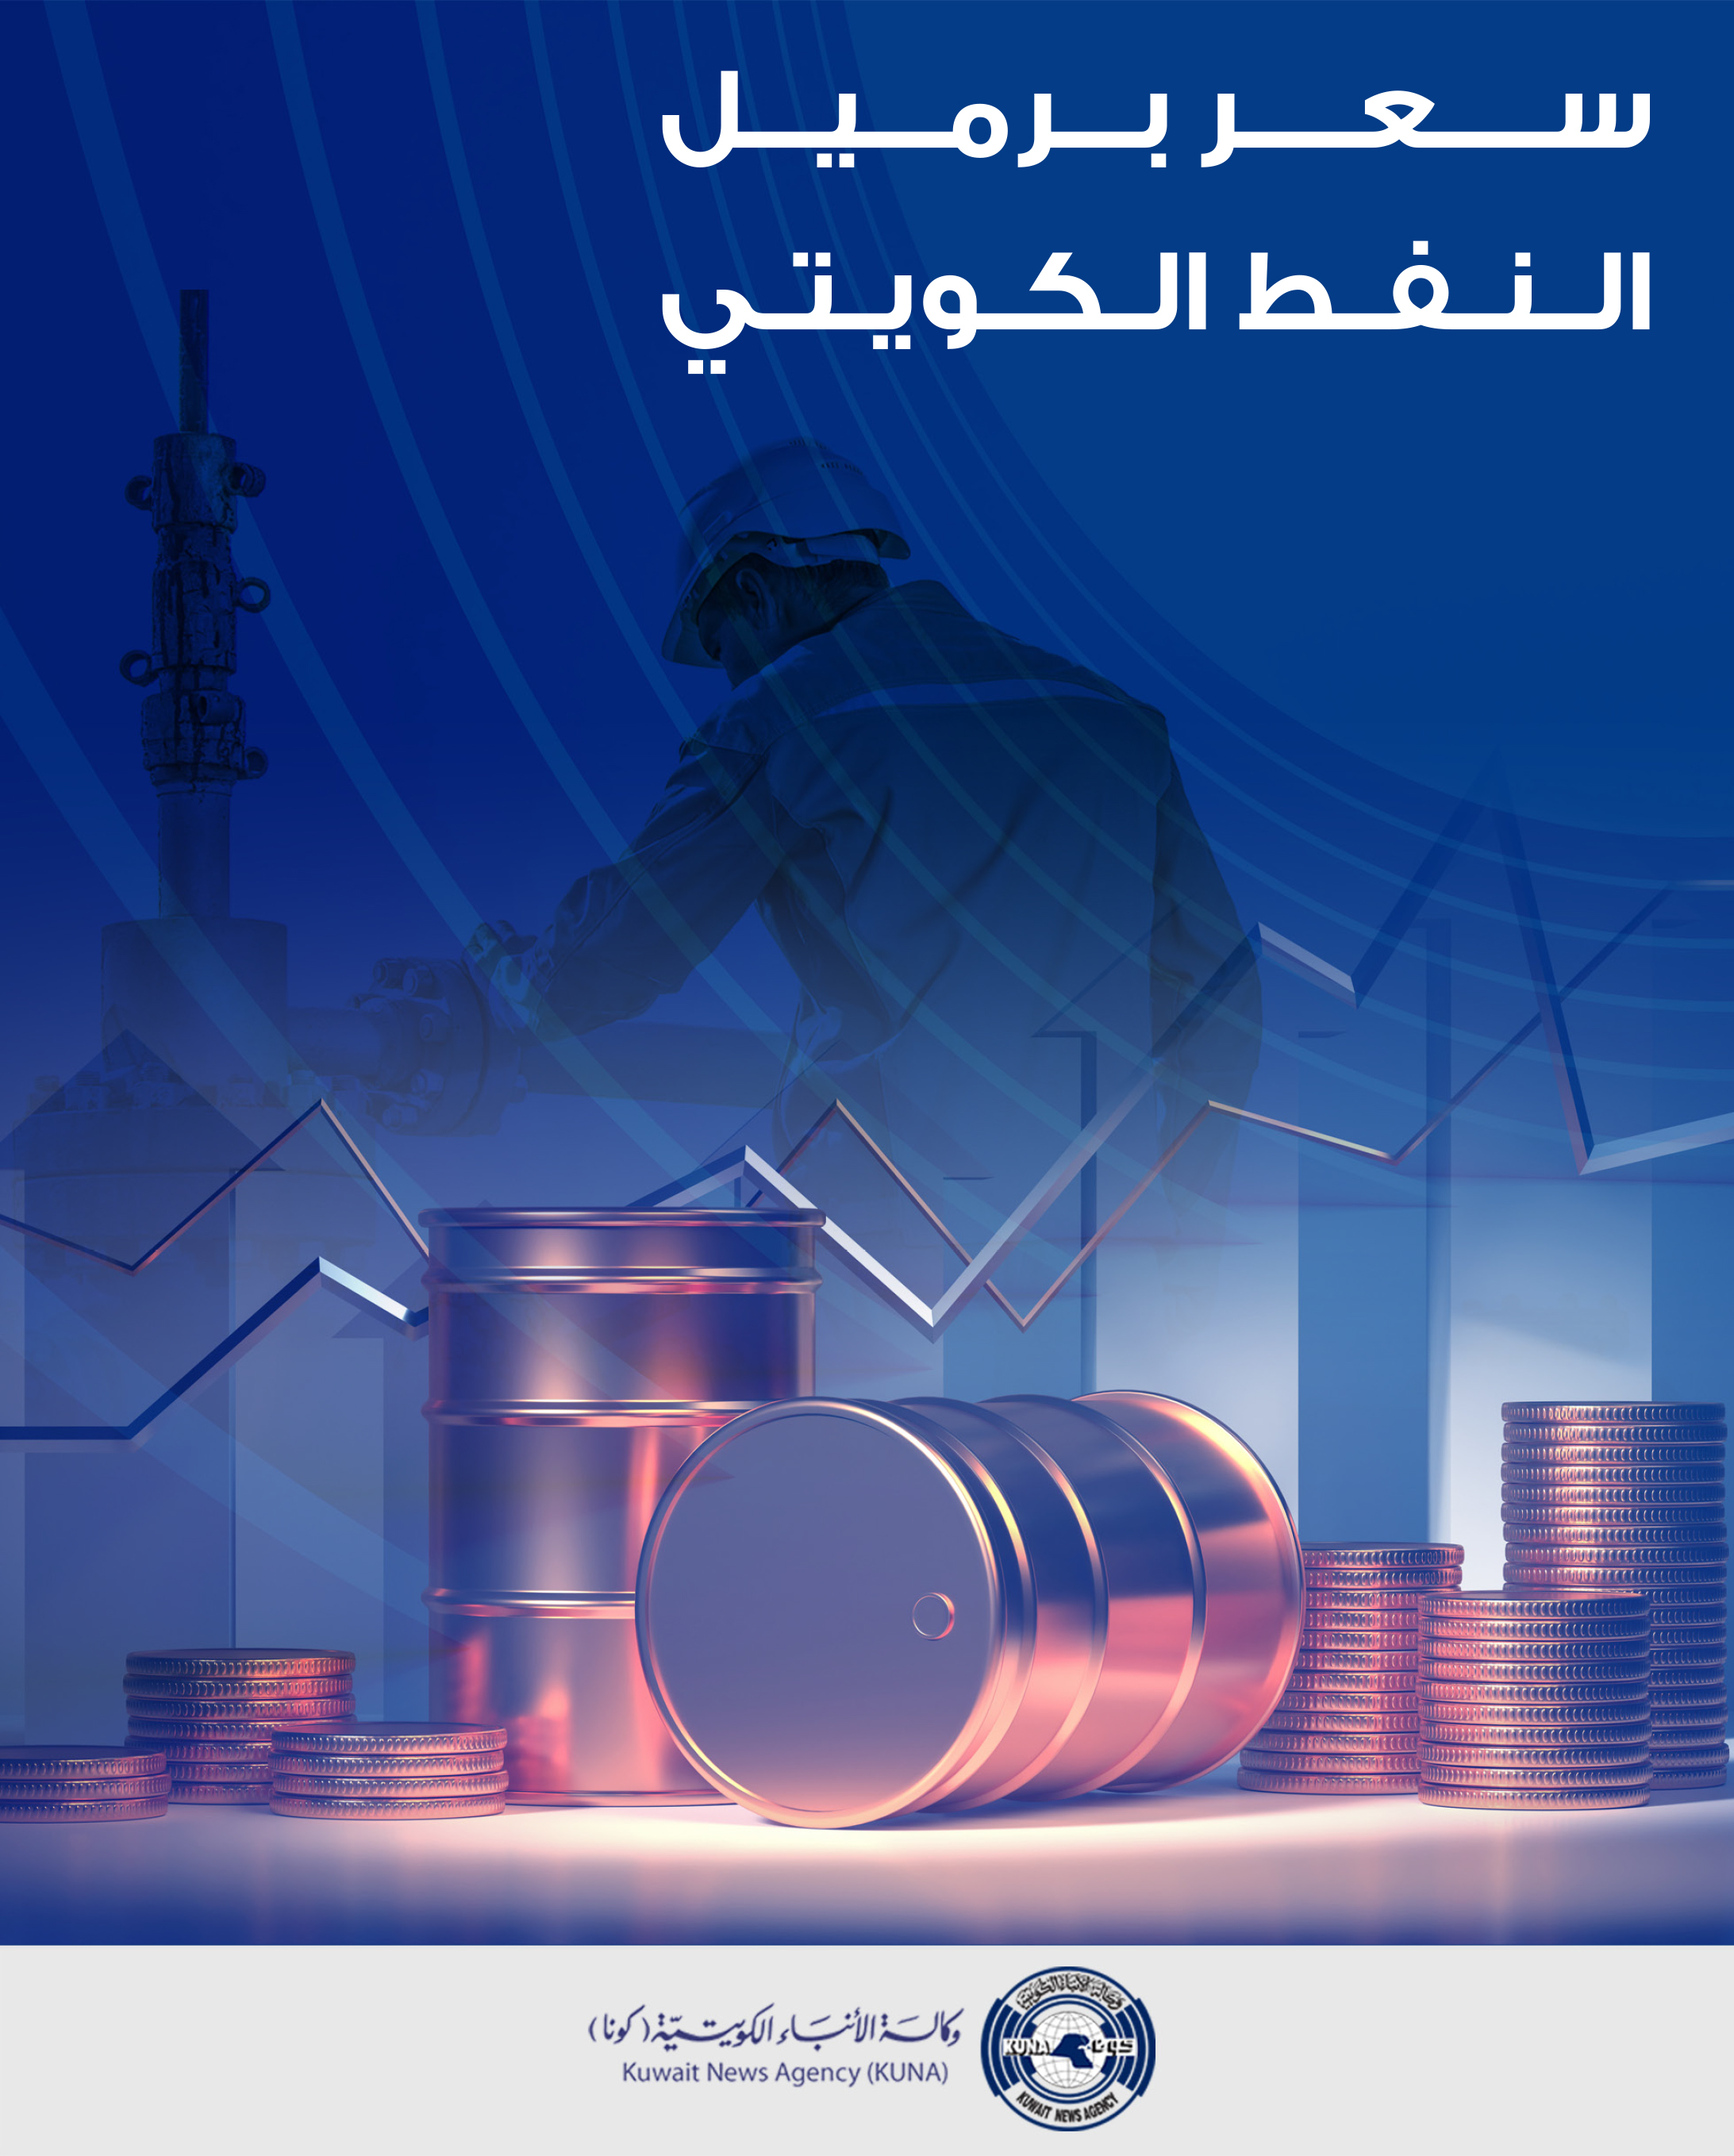 سعر برميل النفط الكويتي ينخفض 56ر2 دولار ليبلغ 37ر74 دولار                                                                                                                                                                                                